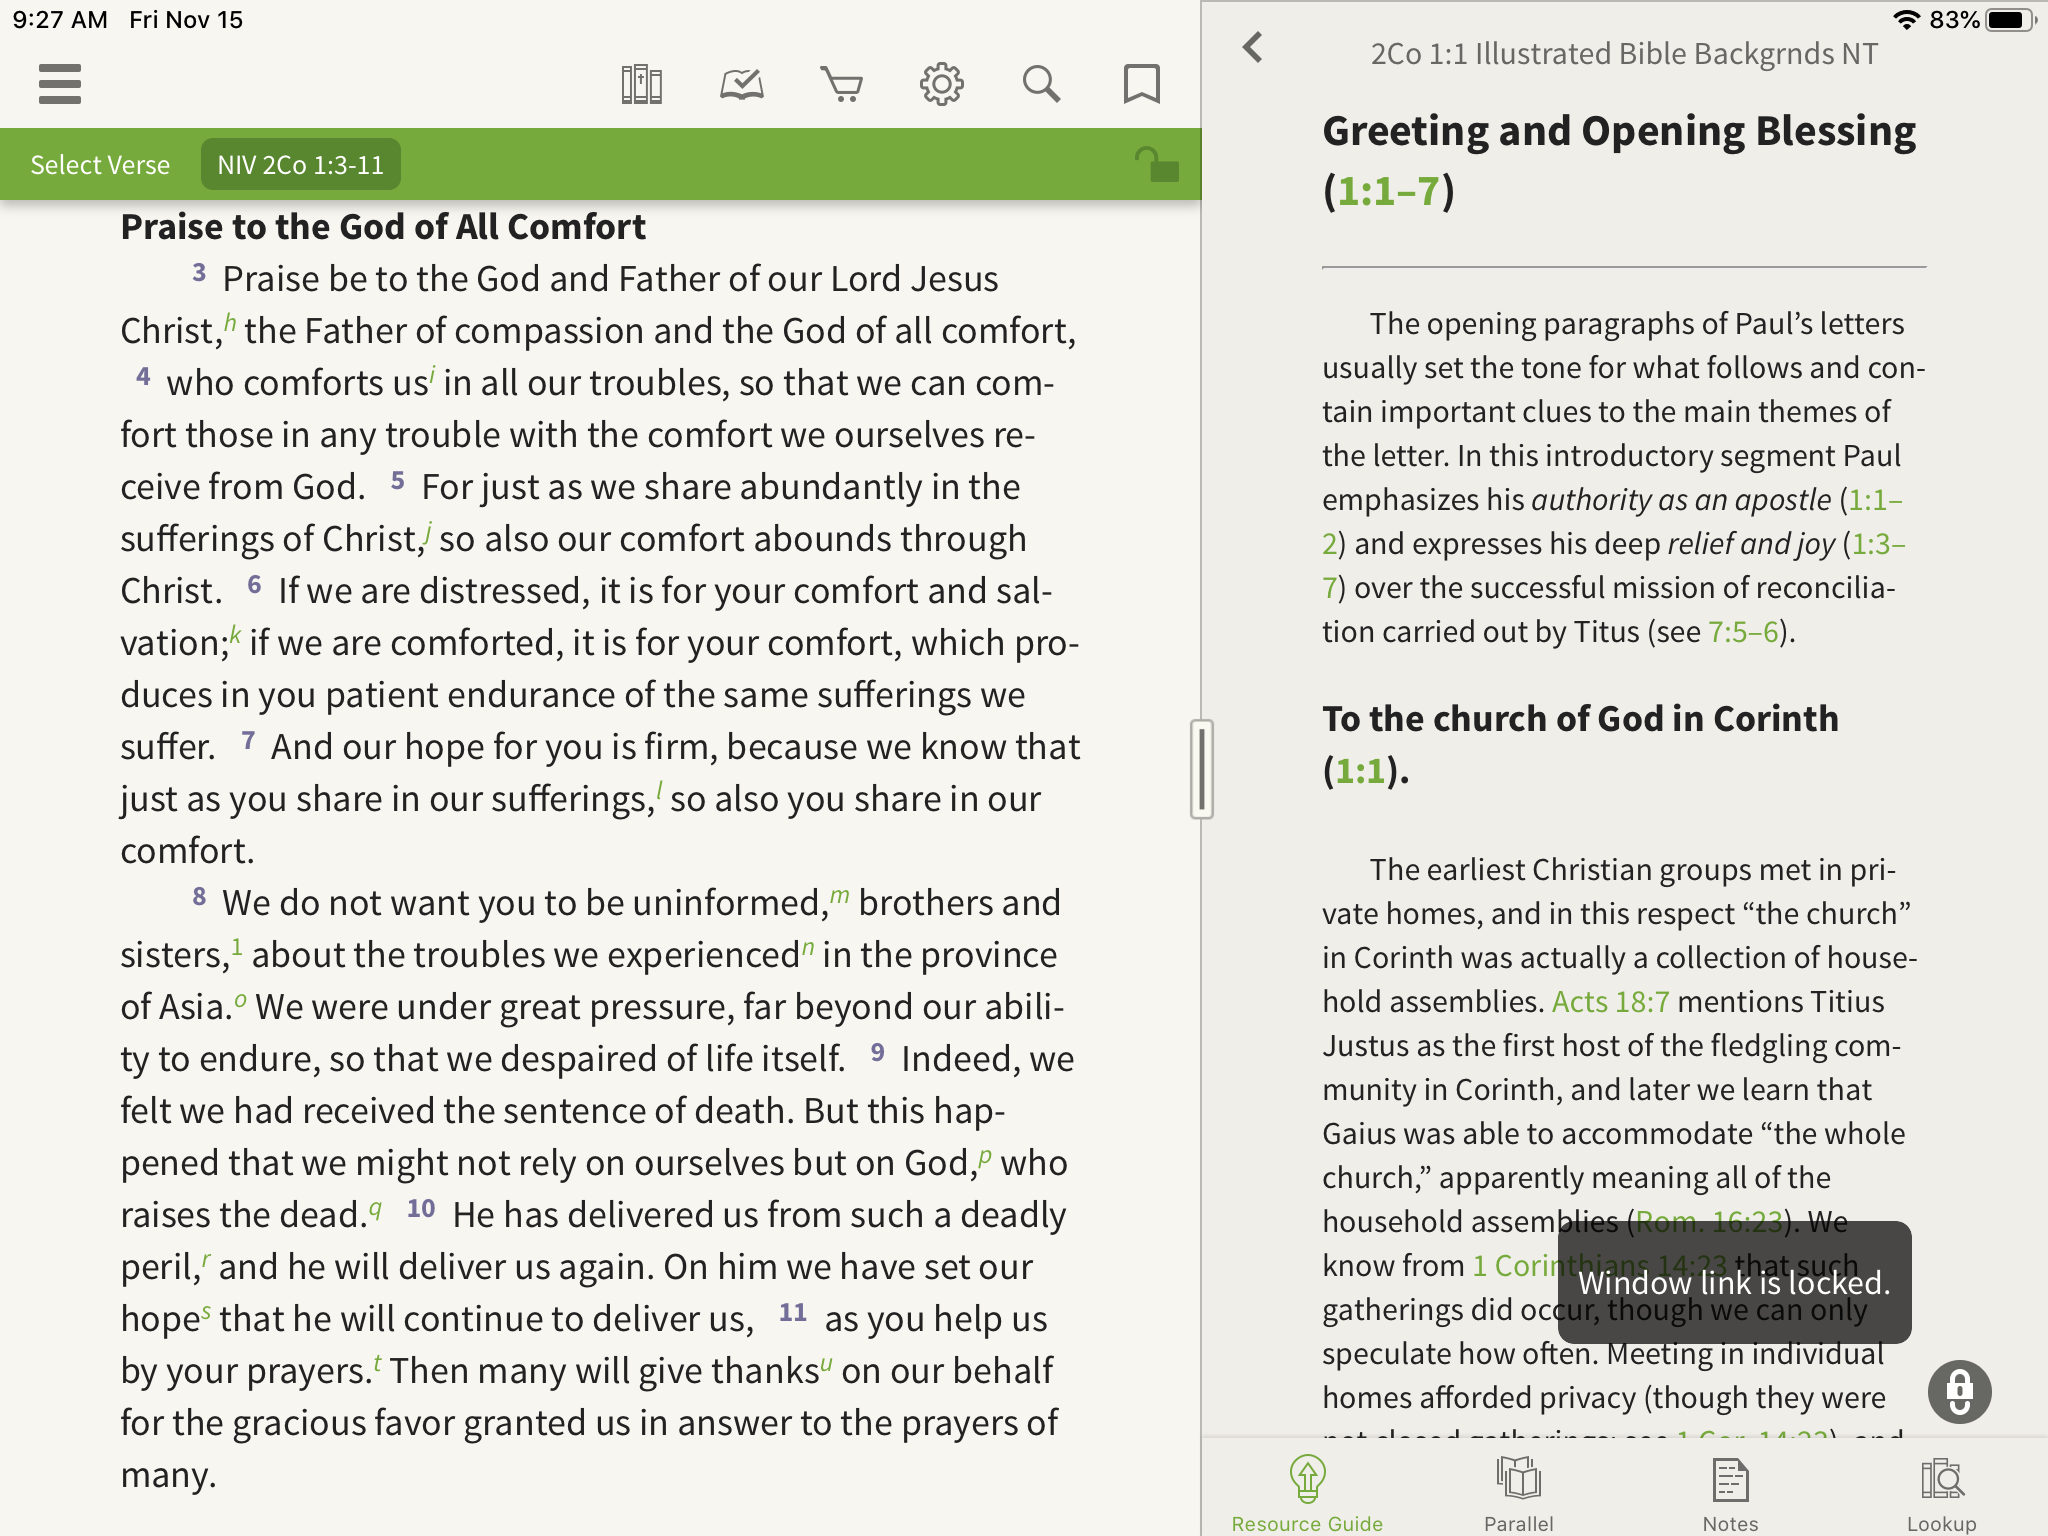 bible app parallel window link